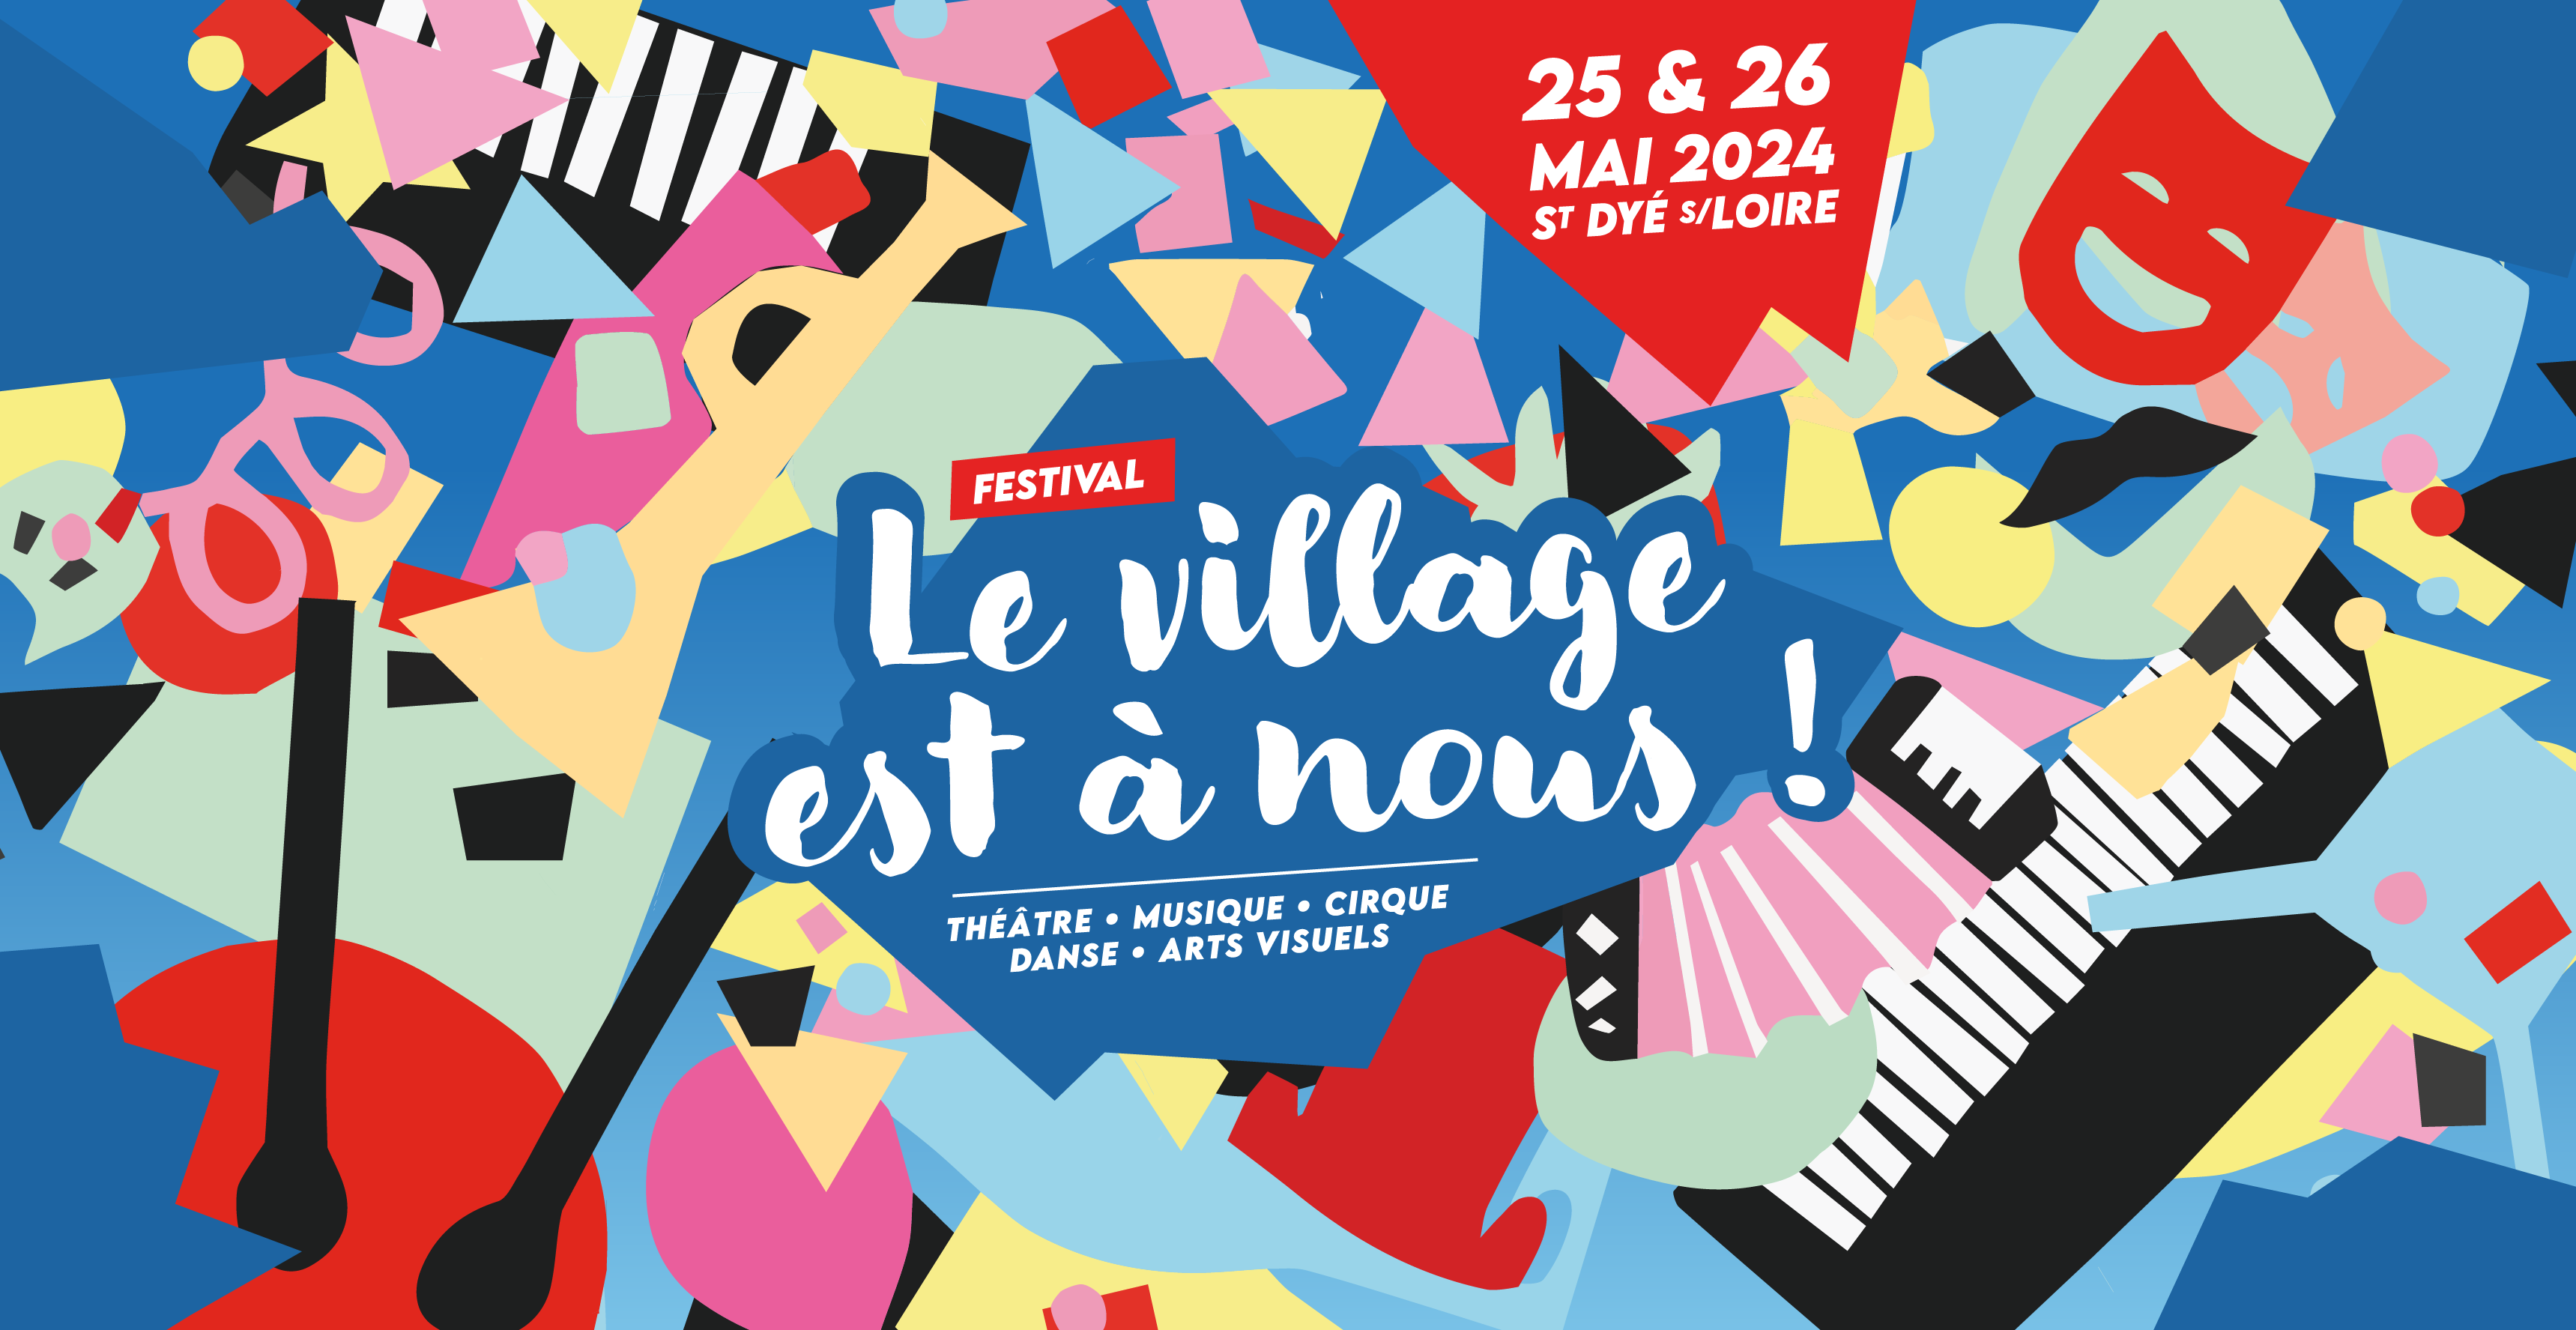 Le village est à nous ! Festival à Saint Dyé sur Loire près de Blois